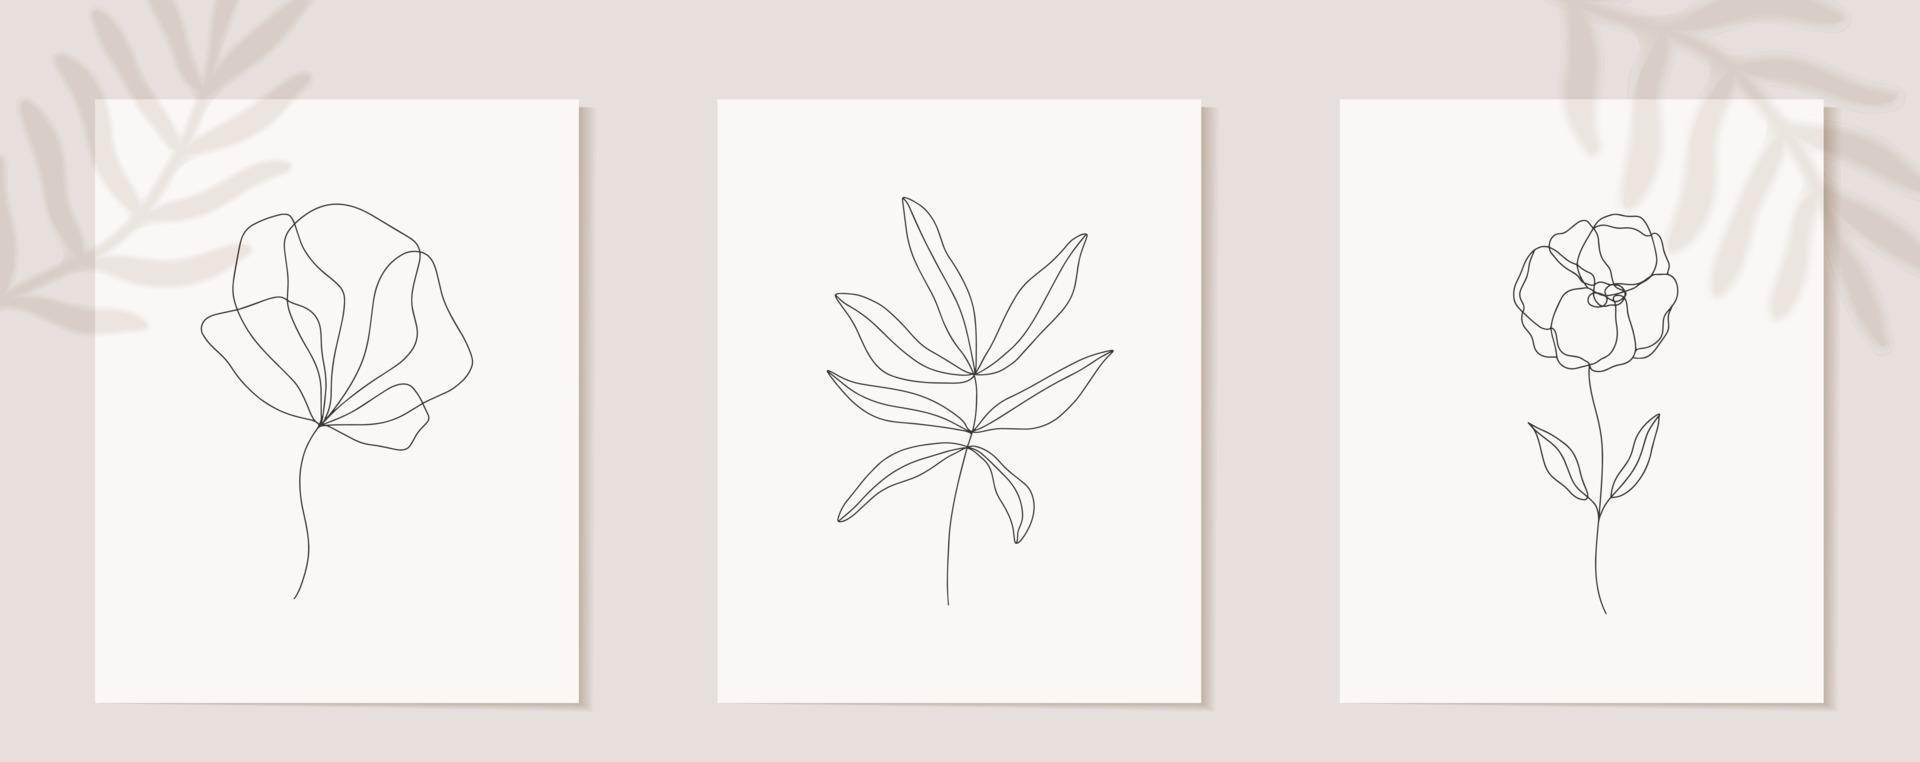 Satz Blumen durchgehende Strichzeichnungen. abstrakte zeitgenössische Collage geometrischer Formen in einem modernen trendigen Stil. Vektor für Schönheitskonzept, T-Shirt Druck, Postkarte, Poster